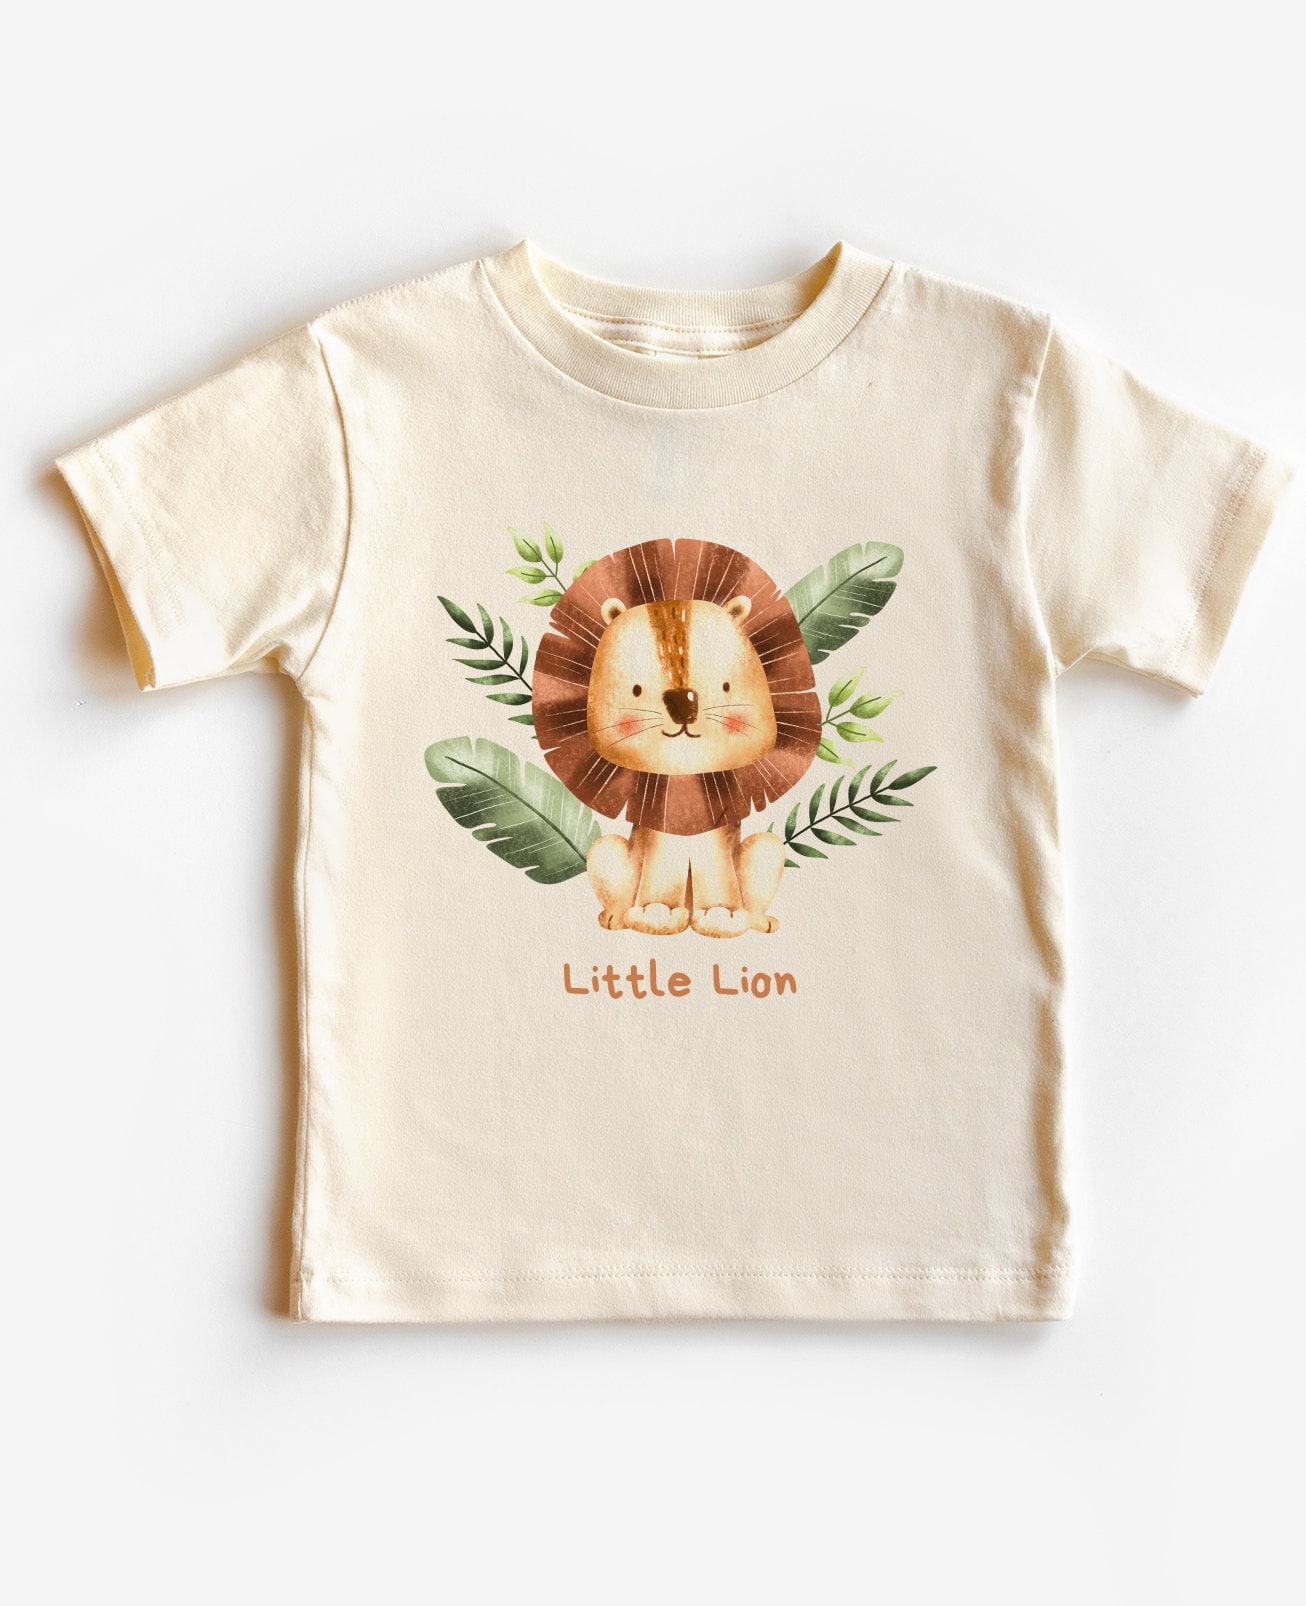 Little Lion Baby T-shirt, Lion Toddler Shirt, Little Lion Kids Tee ...